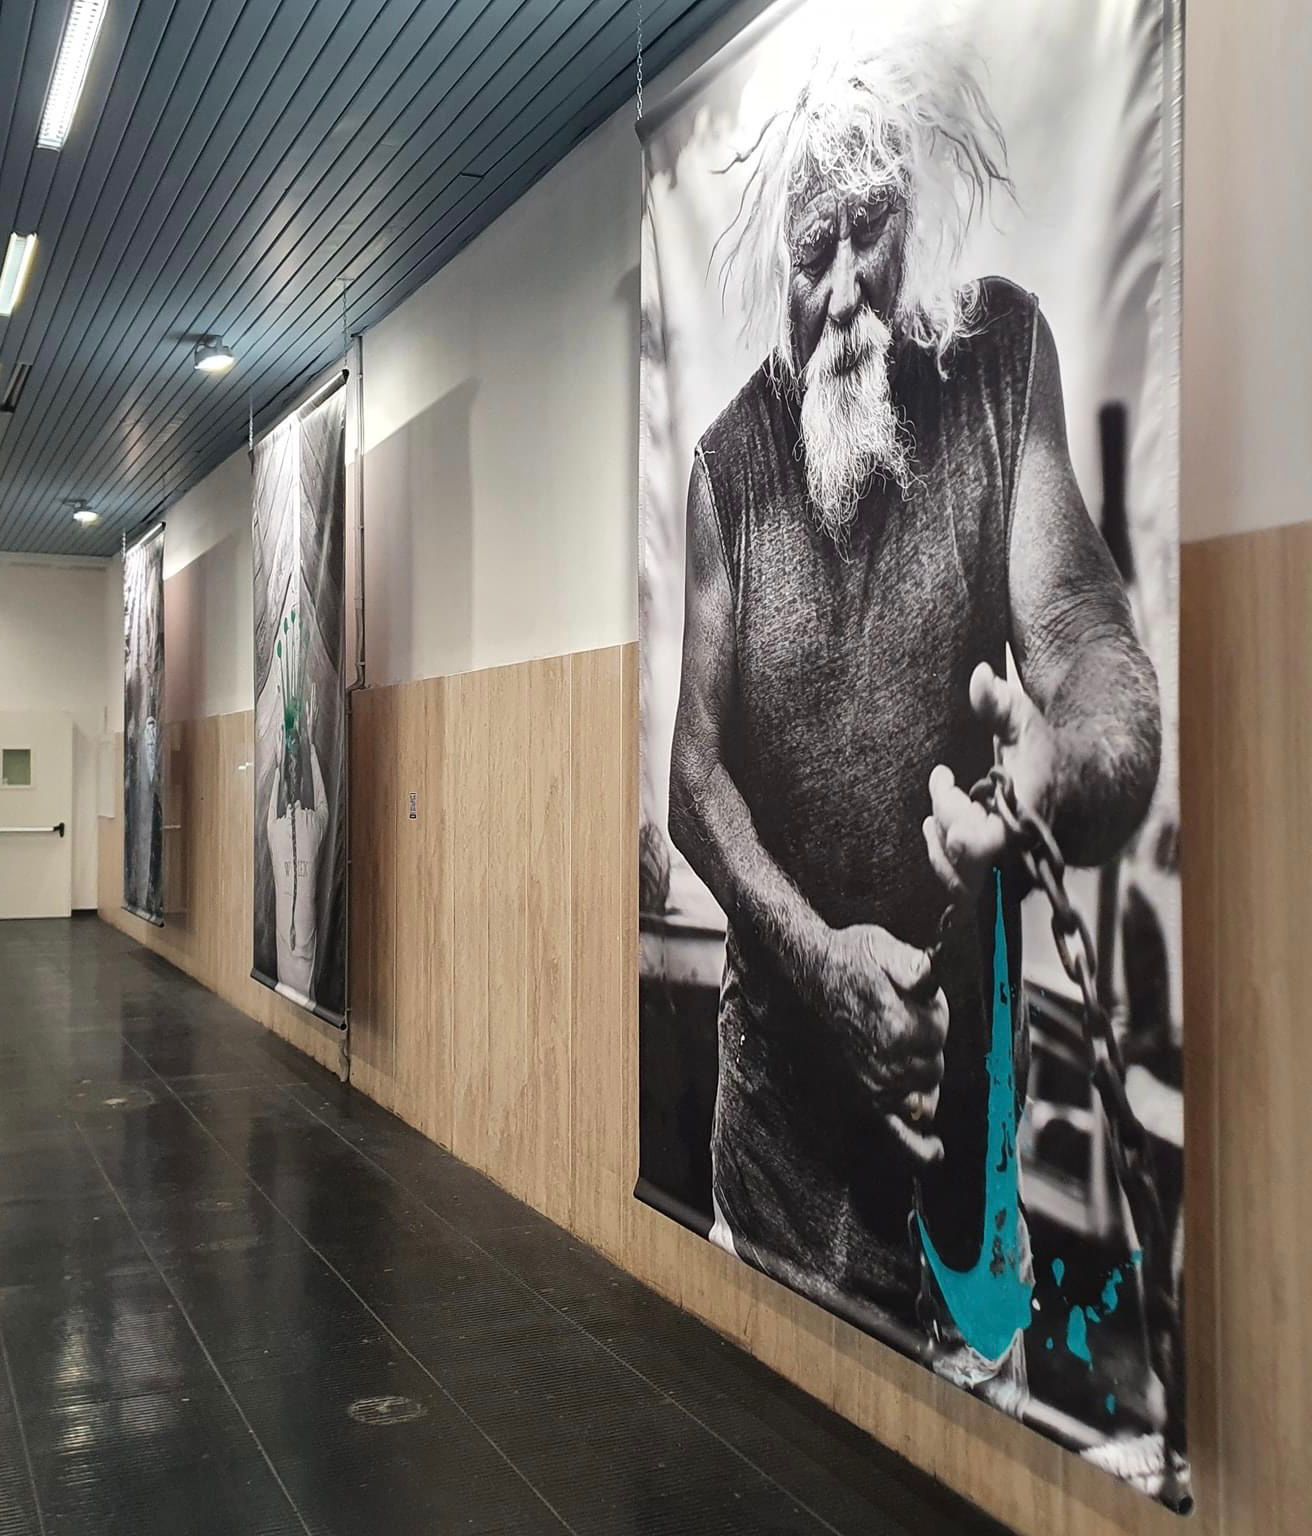 Inaugurata alla presenza dell'amministrazione comunale  la mostra degli artisti bagheresi Francesco Domilici e Arrigo Musti all'aeroporto di Palermo